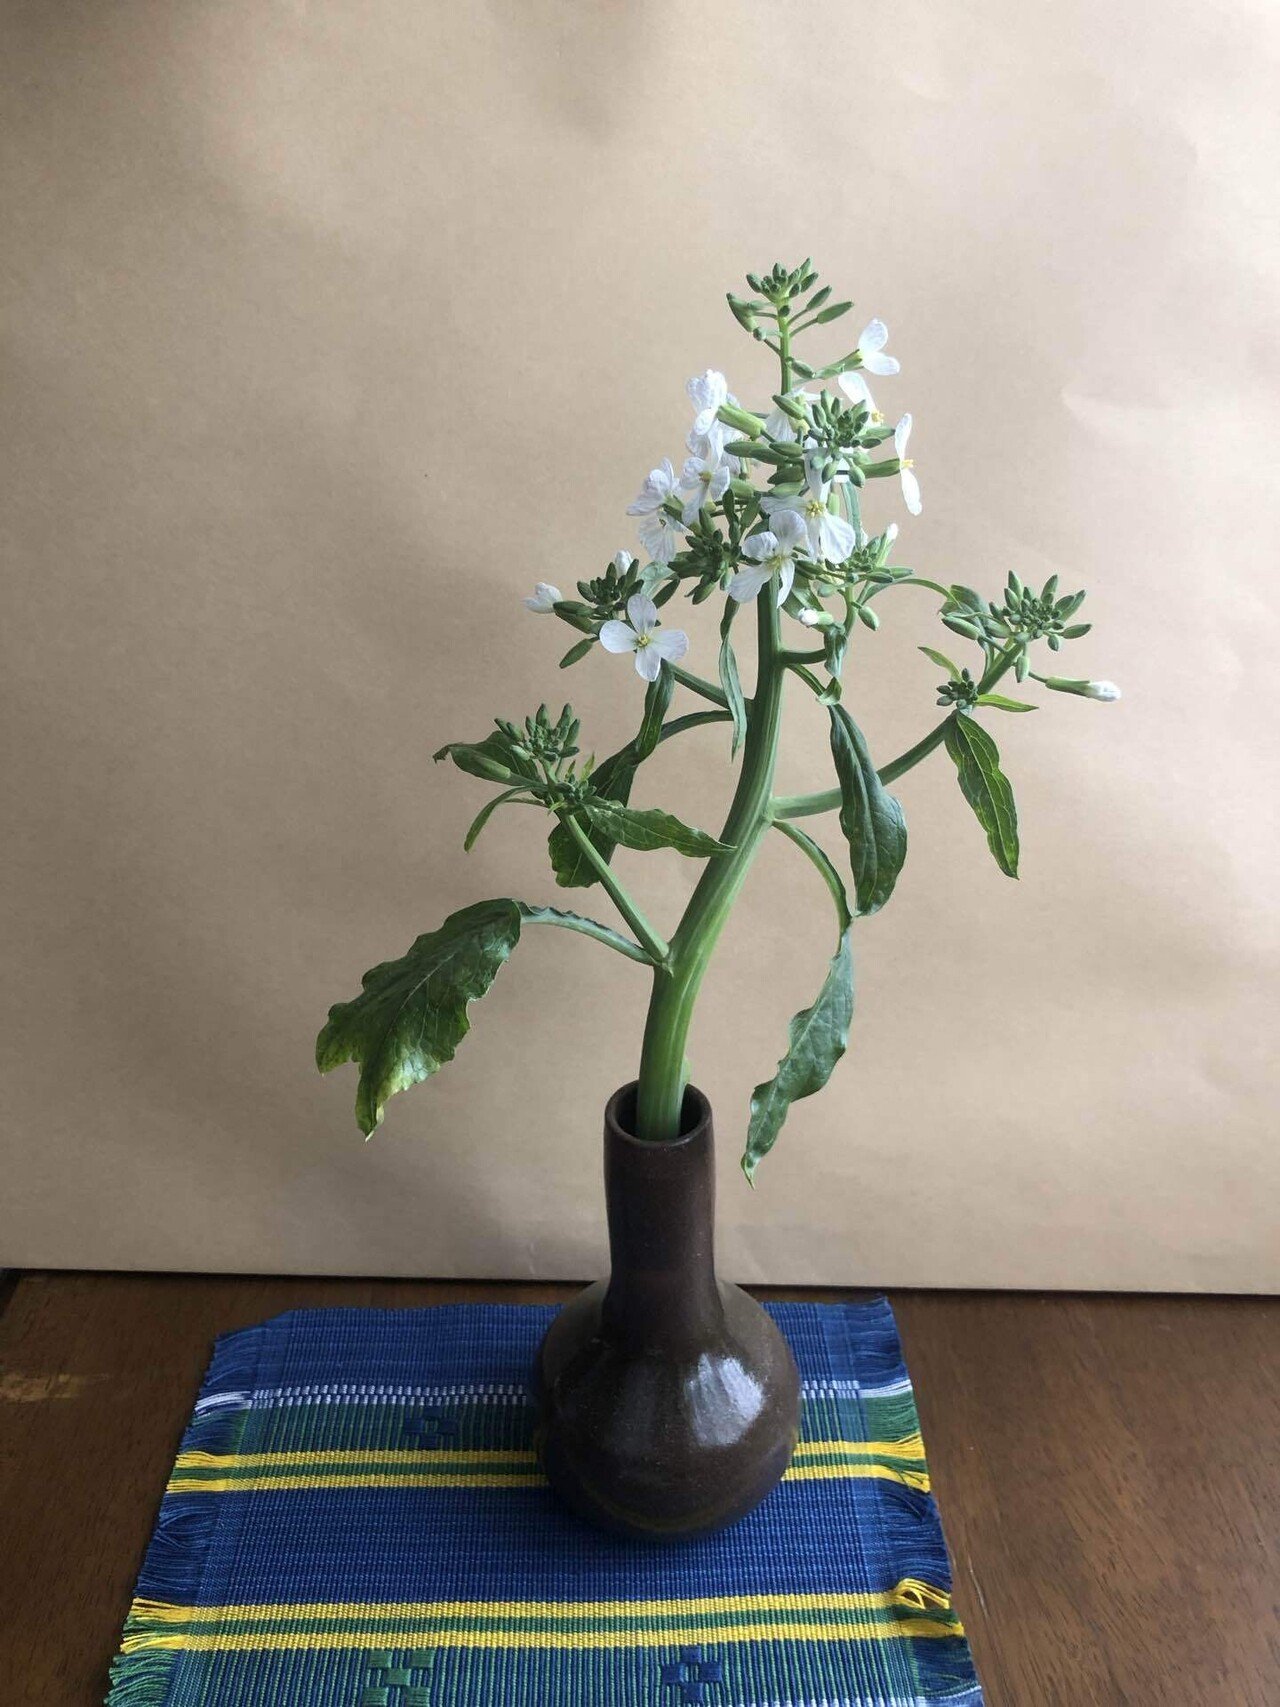 昨日 大根の収穫をした 小さく白い大根の花が 慎ましく咲いている 花瓶に挿すと曲がっていた茎が 真っ直ぐに上に向かって稟とした 城田孝 Note